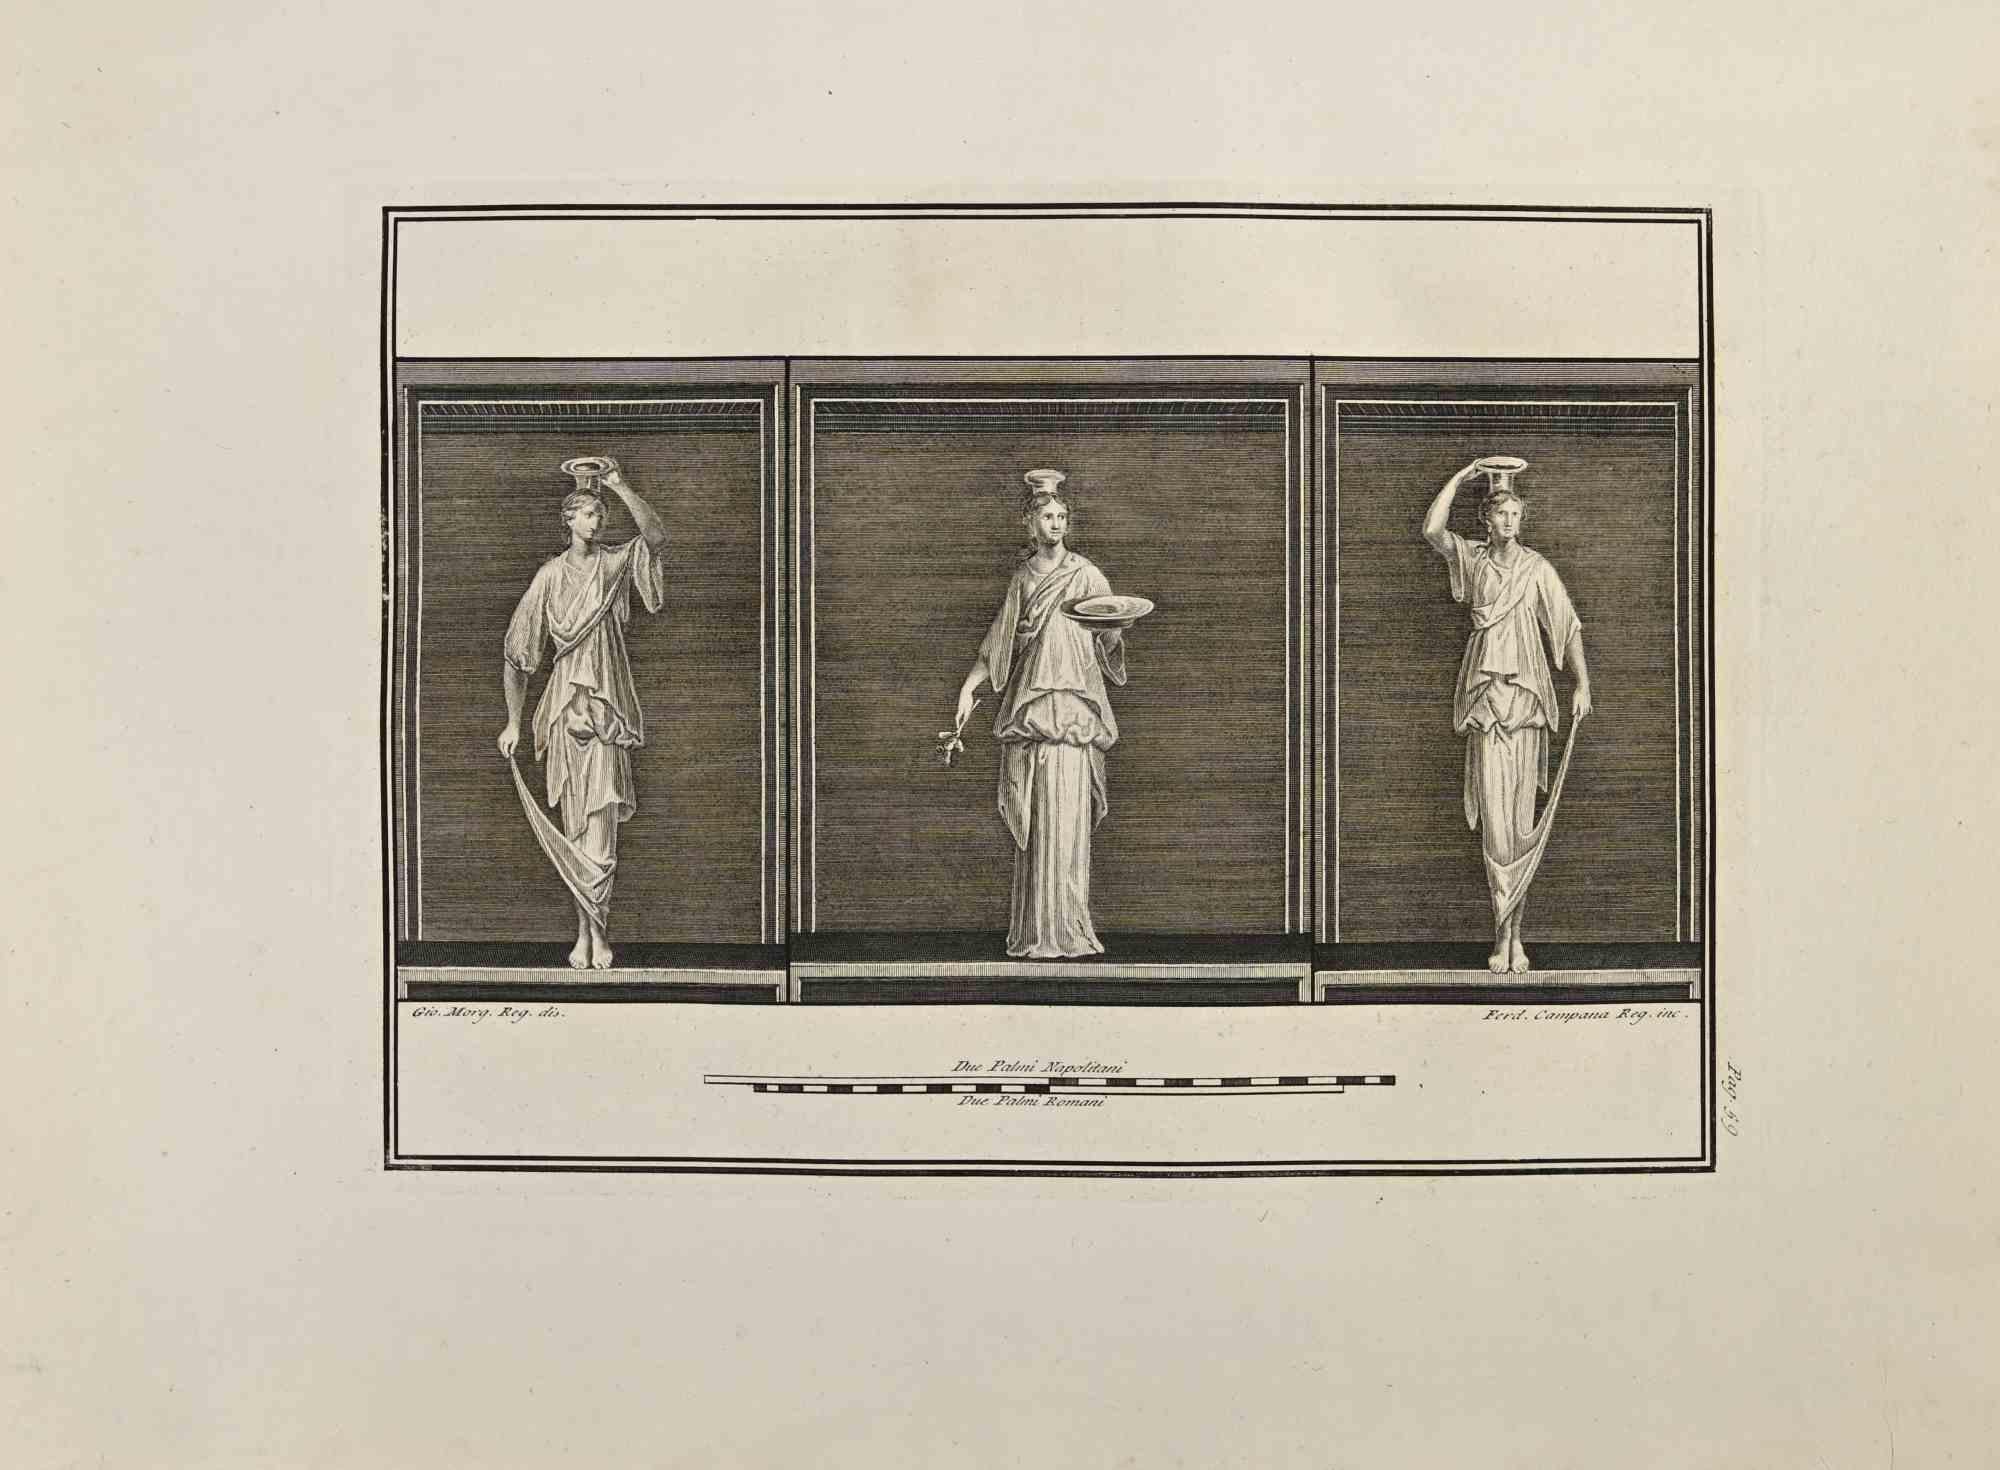 Die Göttin Vesta aus den "Altertümern von Herculaneum" ist eine Radierung auf Papier von Ferdinando Campana aus dem 18. Jahrhundert.

Signiert auf der Platte.

Guter Zustand mit einigen Stockflecken und Falten aufgrund der Zeit.

Die Radierung